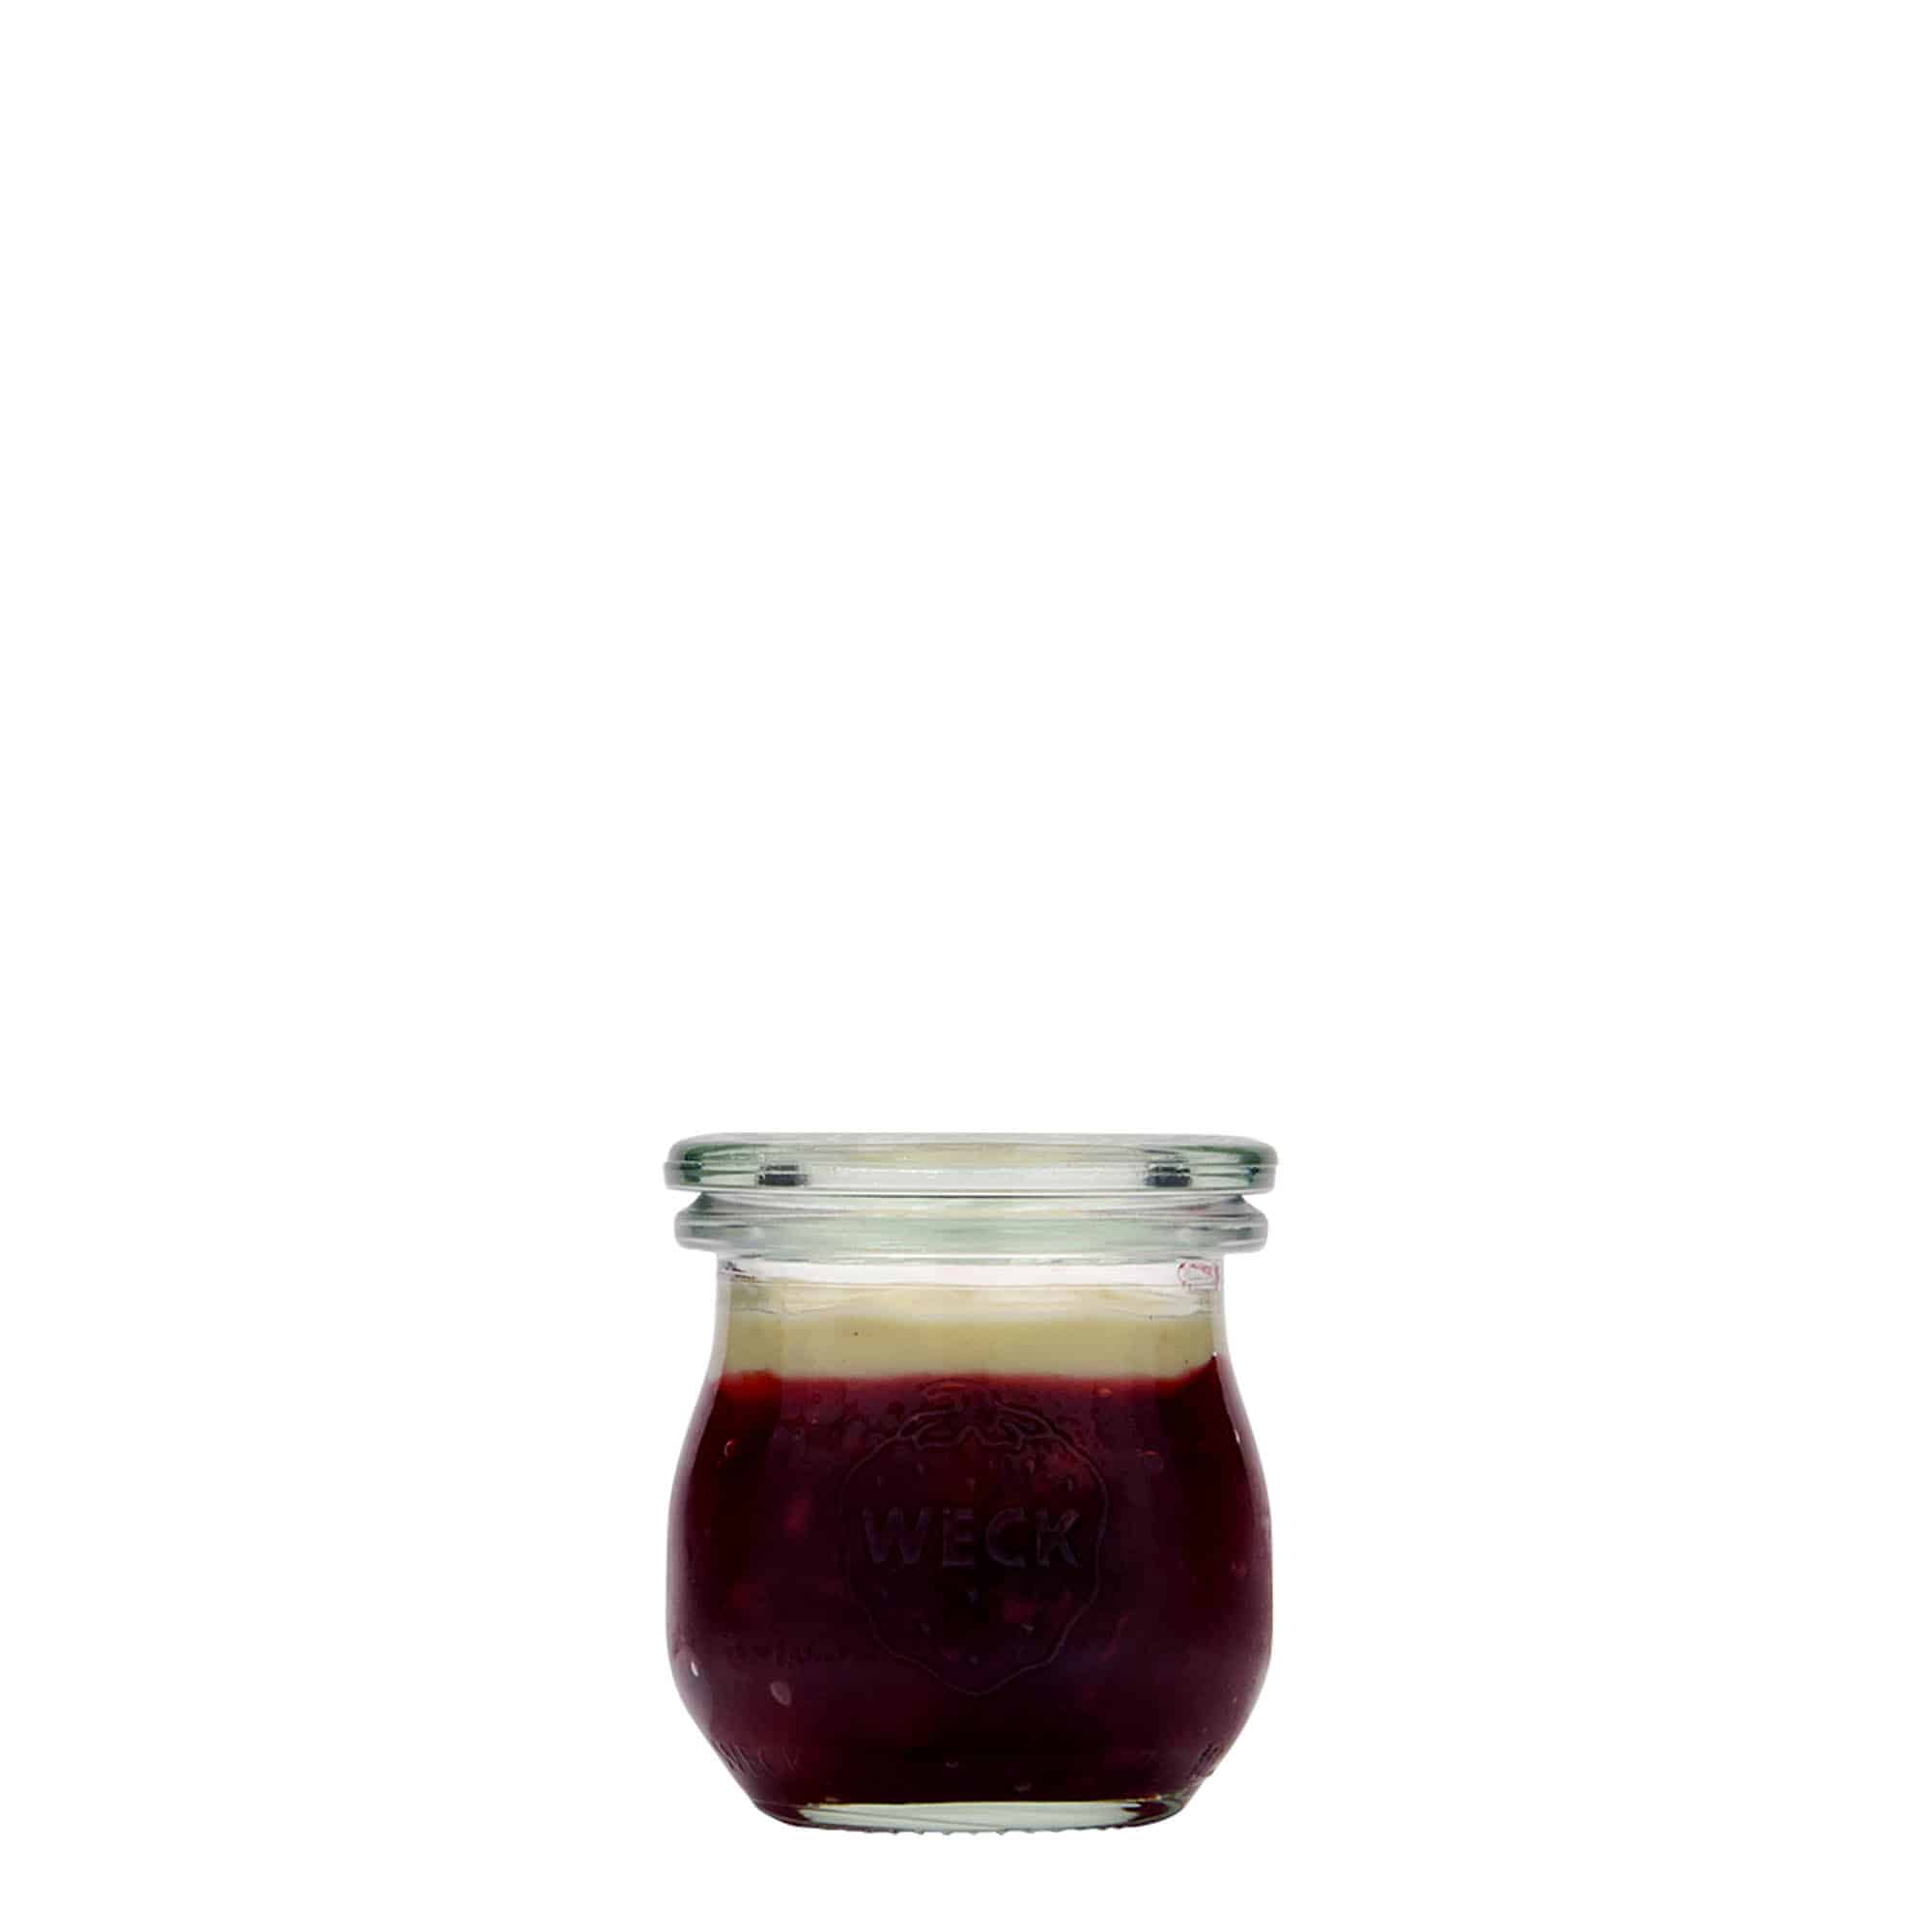 75 ml Vasetto WECK Tulipano, vetro, imboccatura: bordo rotondo